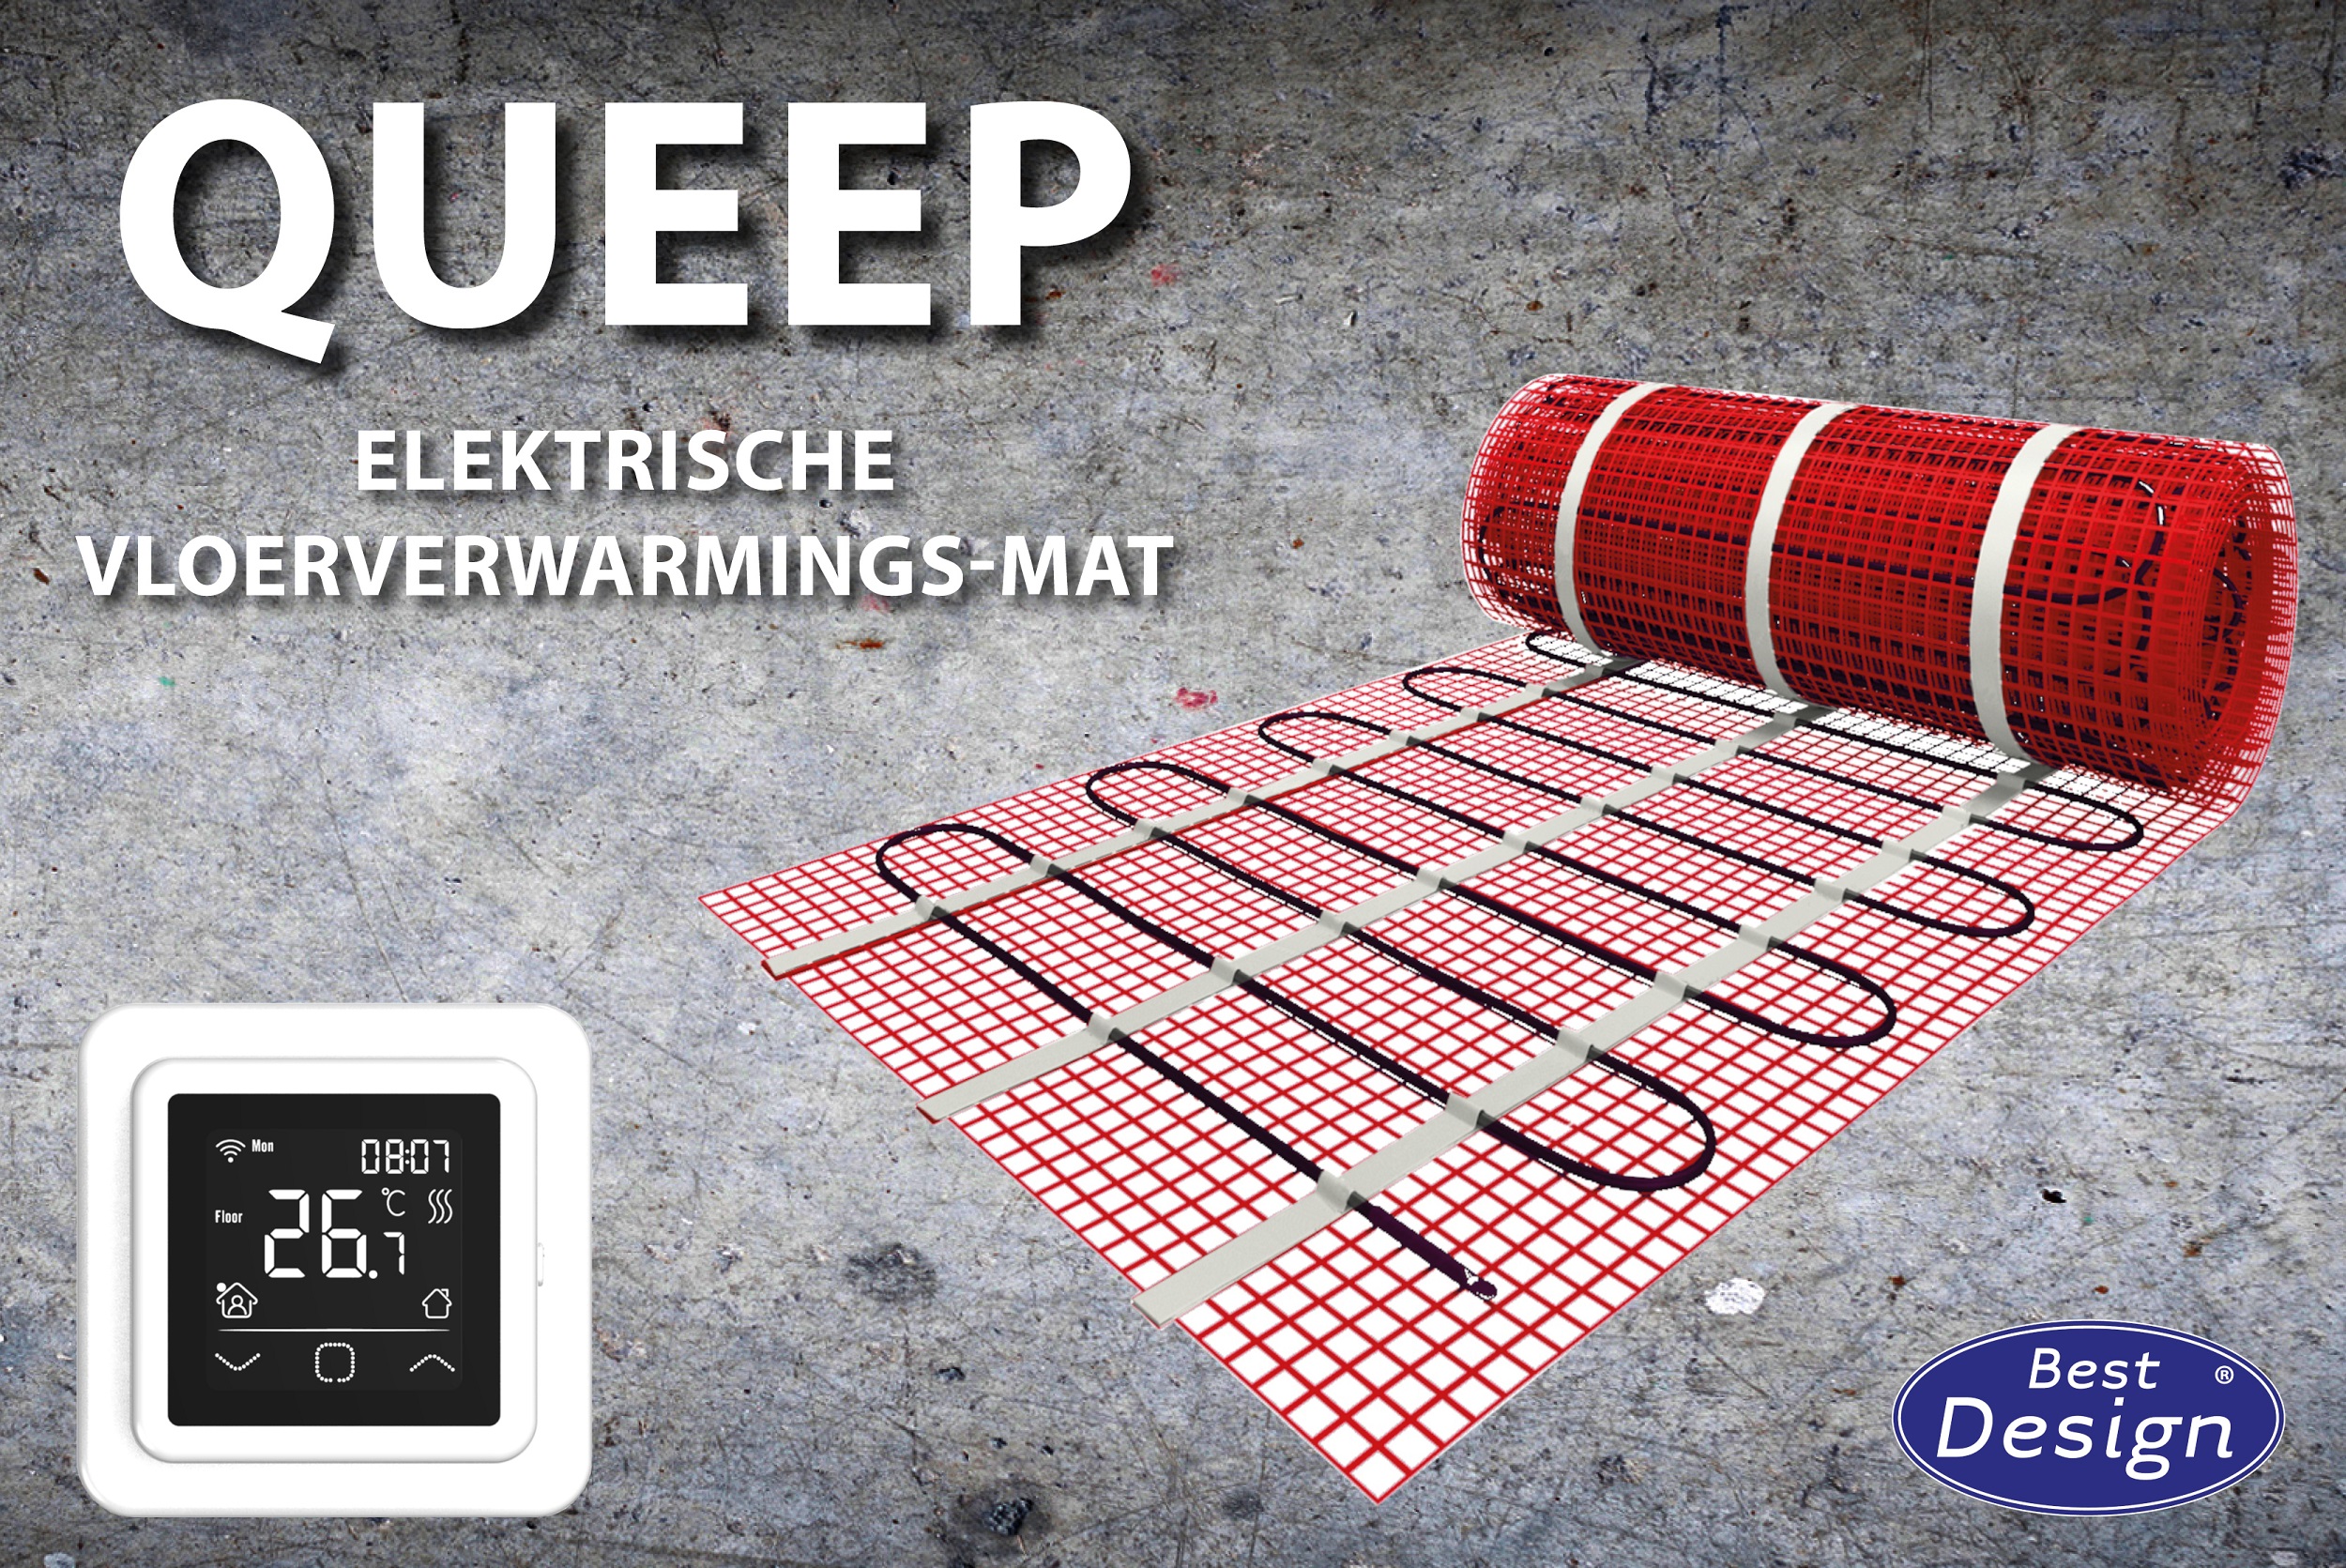 Best-Design "Queep" elektrische vloerverwarmings-mat 4,5 m2 Top Merken Winkel